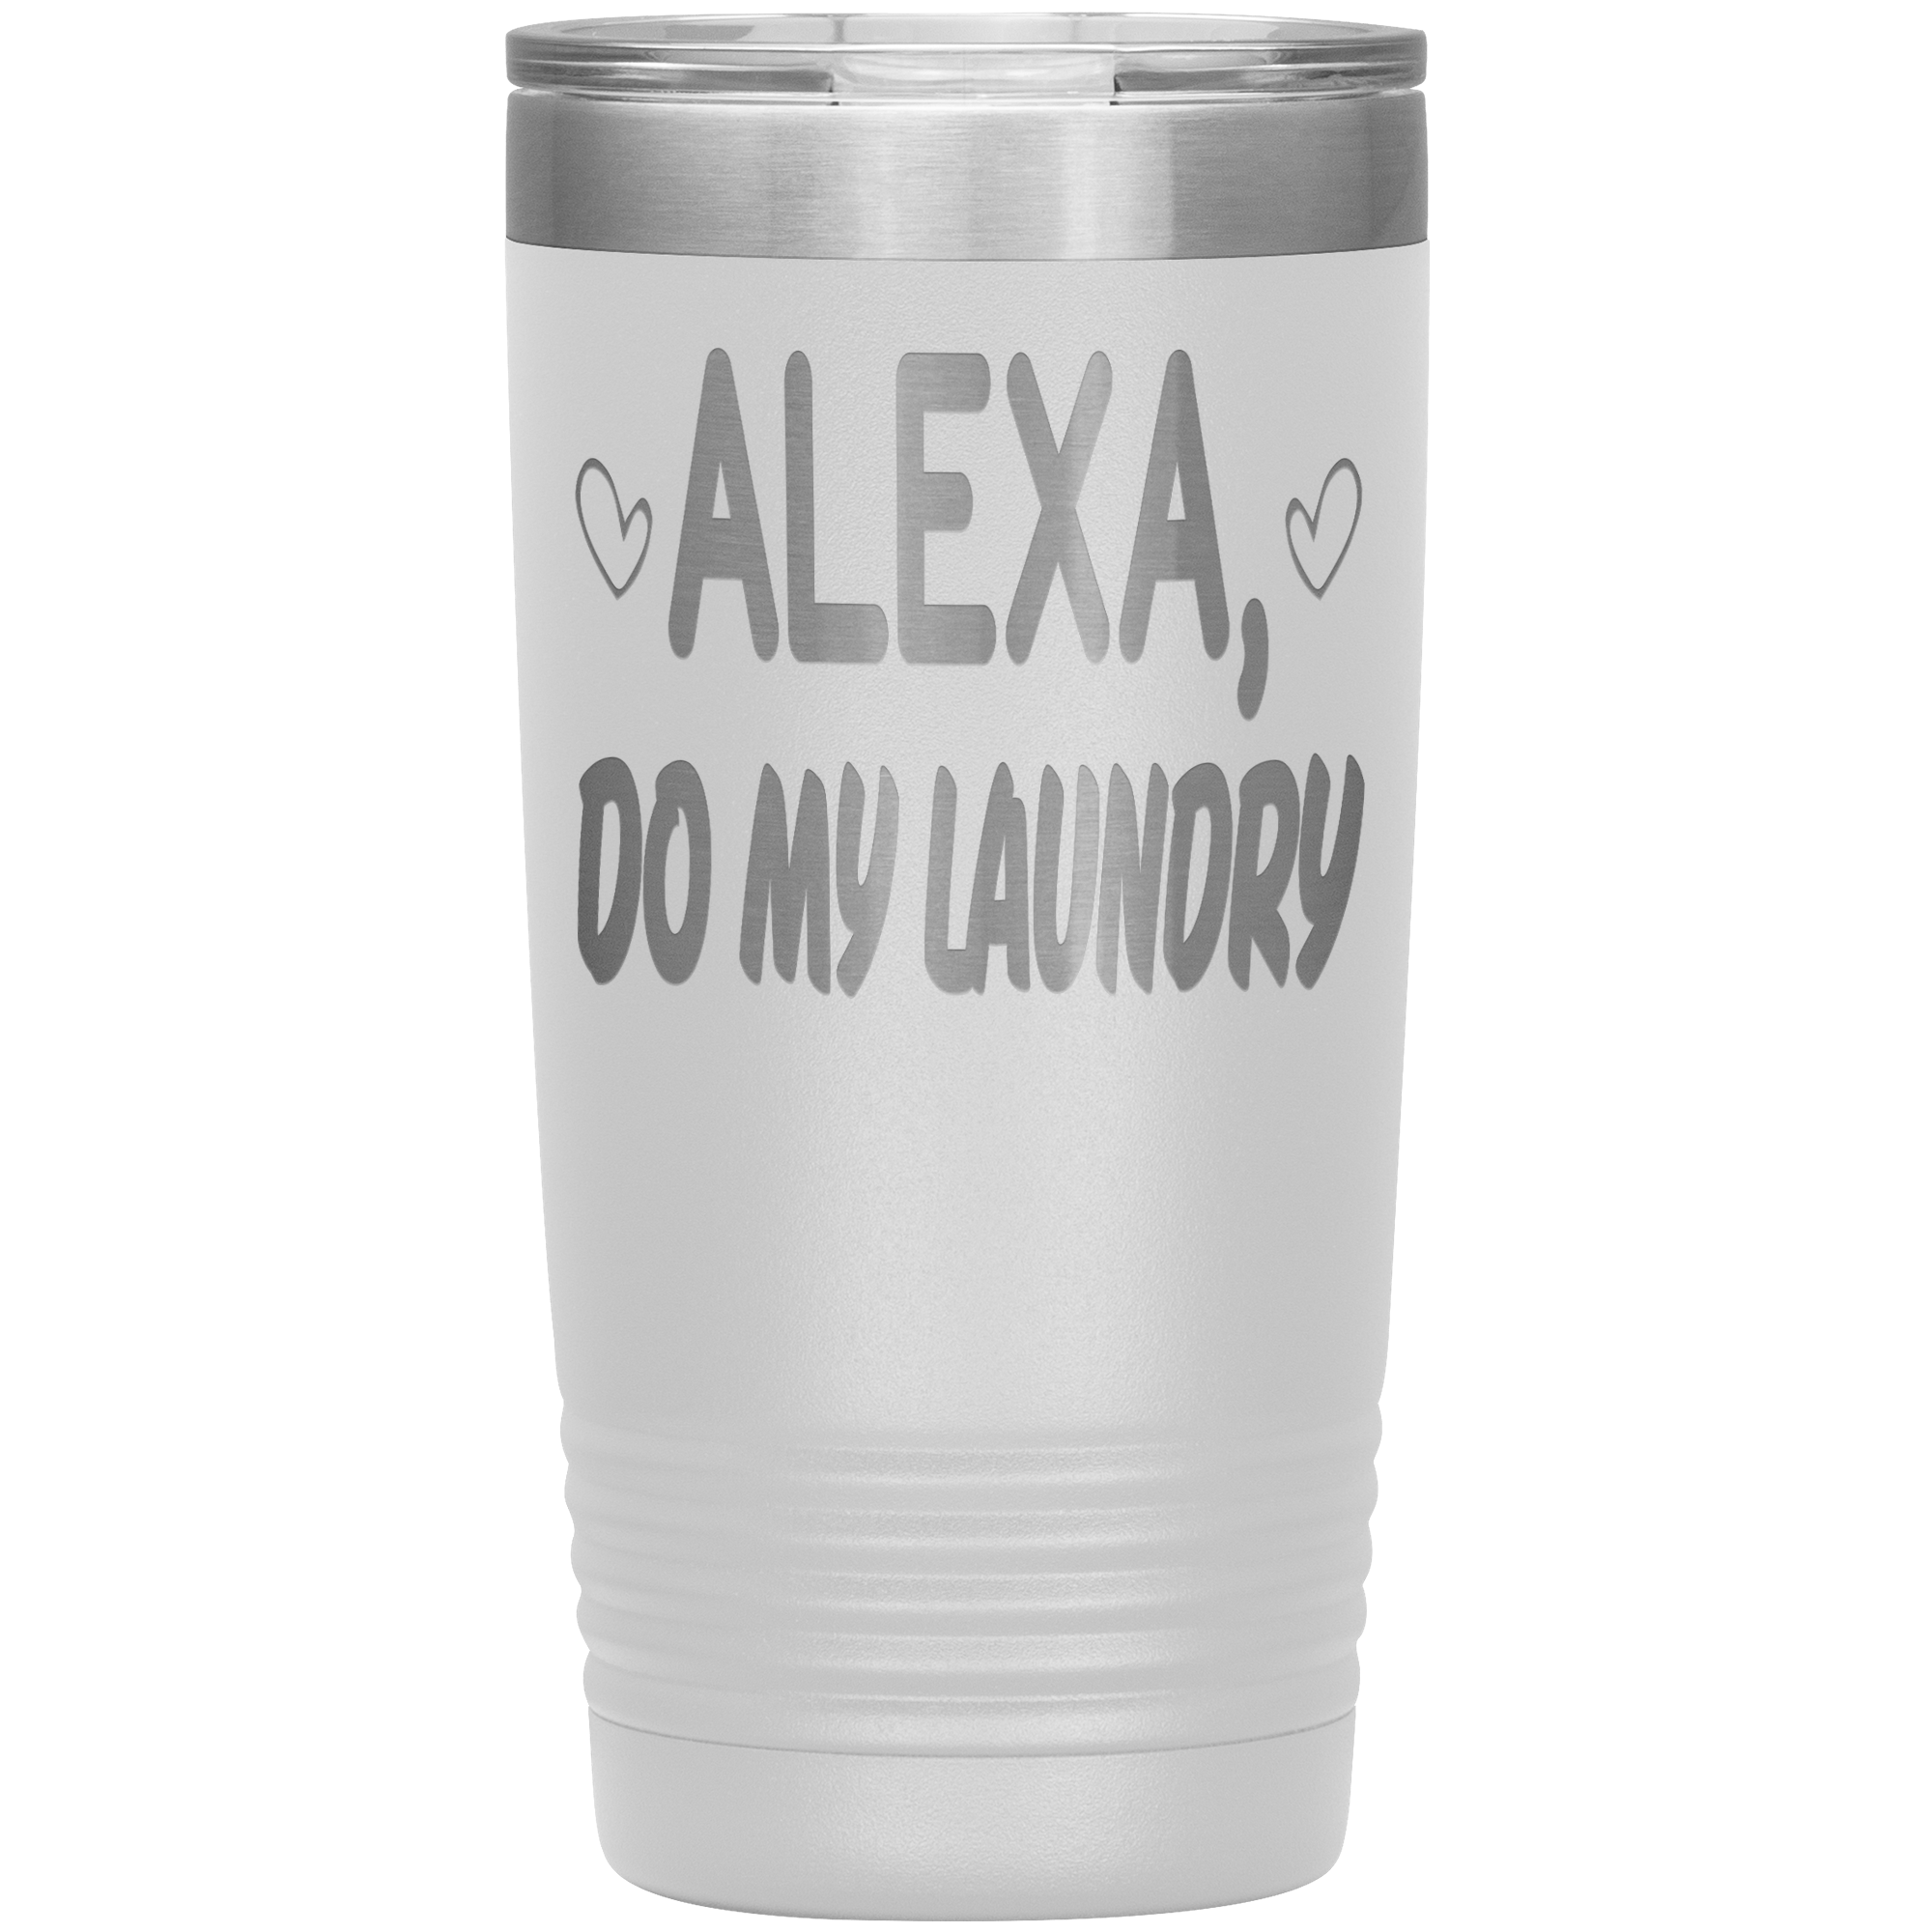 " ALEXA DO MY LAUNDRY ' TUMBLER